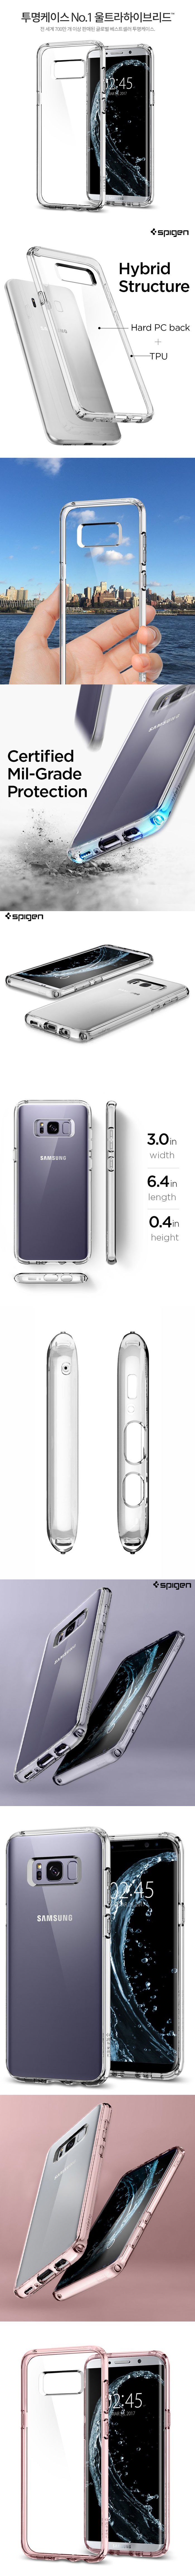 rao-vặt - Ốp lưng Samsung Galaxy S8 Plus, Bao da Samsung S8 Plus  chất lượng cao nhất Việt Nam Op-lung-galaxy-s8-plus-spigen-ultra-crystal-trong-suot-chong-soc-usa-17